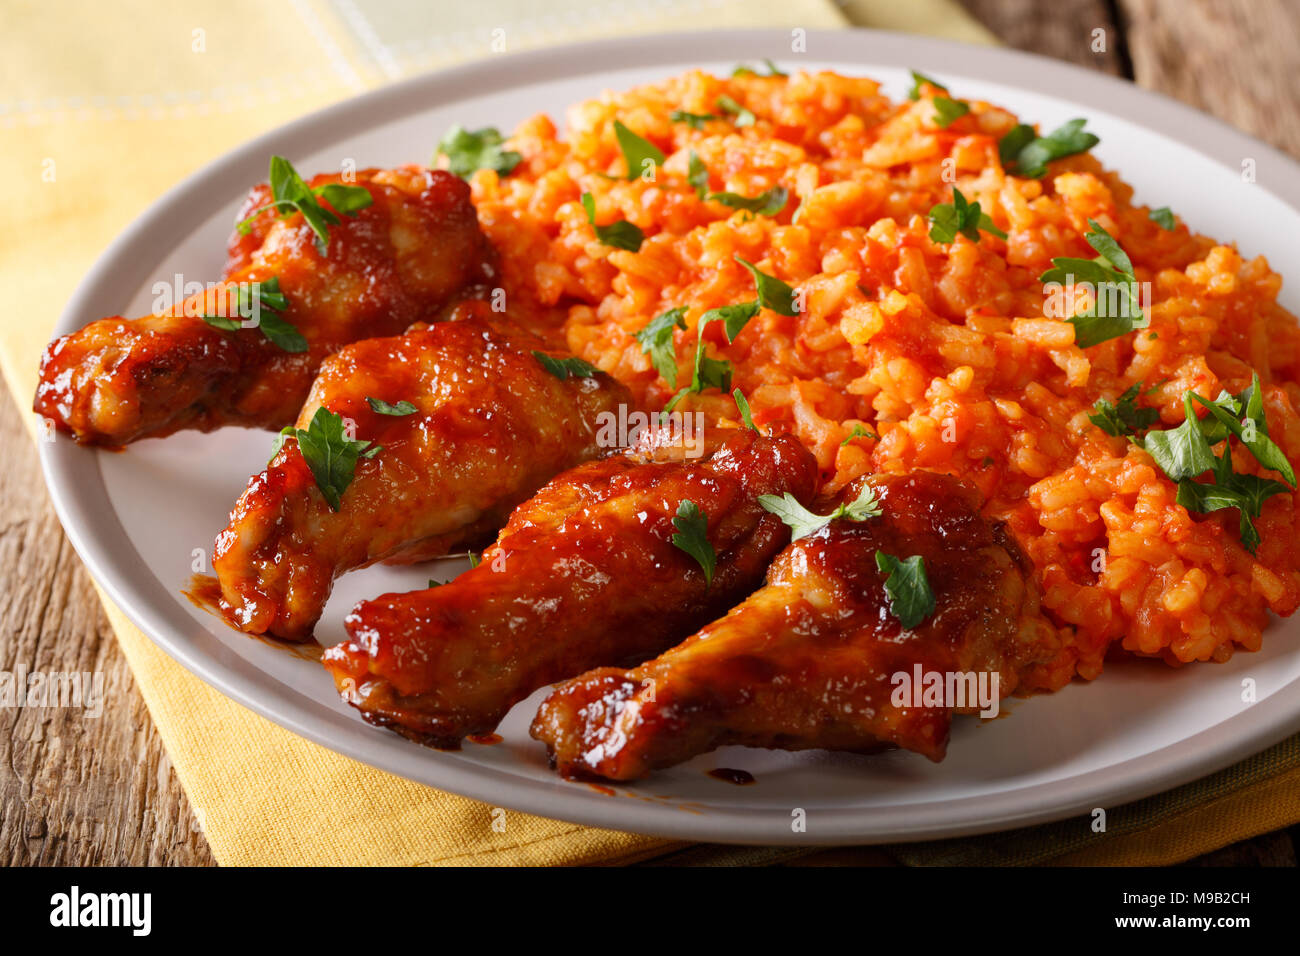 Cibo nigeriano party: Jollof riso con alette di pollo fritte close-up su una piastra orizzontale. Foto Stock